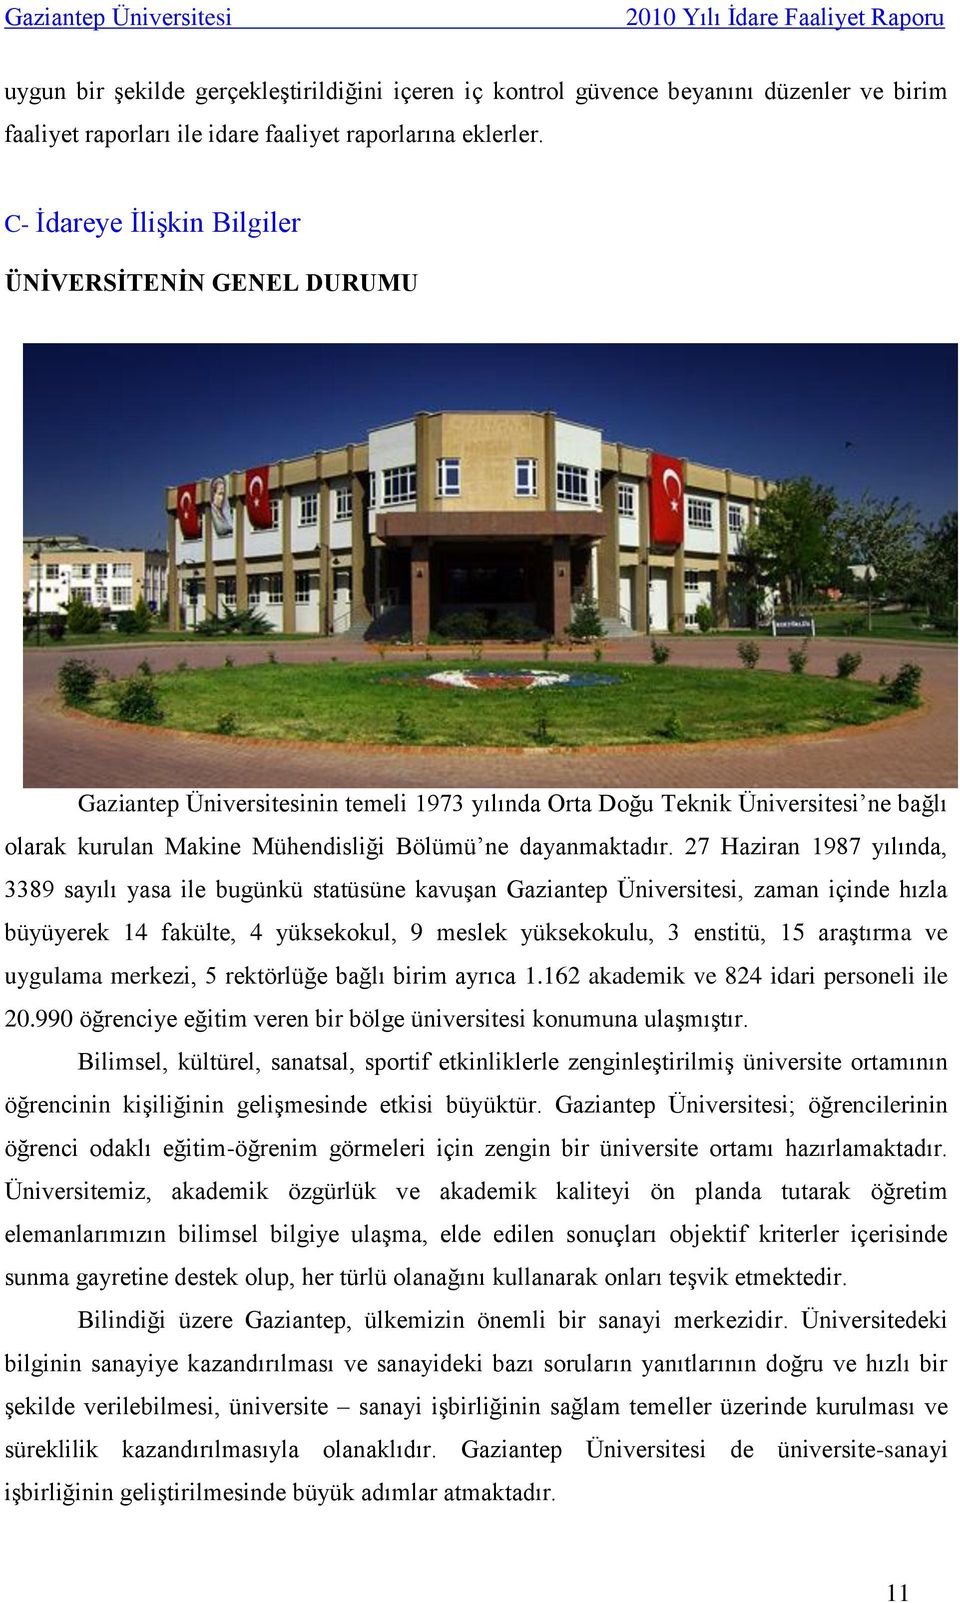 27 Haziran 1987 yılında, 3389 sayılı yasa ile bugünkü statüsüne kavuşan Gaziantep Üniversitesi, zaman içinde hızla büyüyerek 14 fakülte, 4 yüksekokul, 9 meslek yüksekokulu, 3 enstitü, 15 araştırma ve